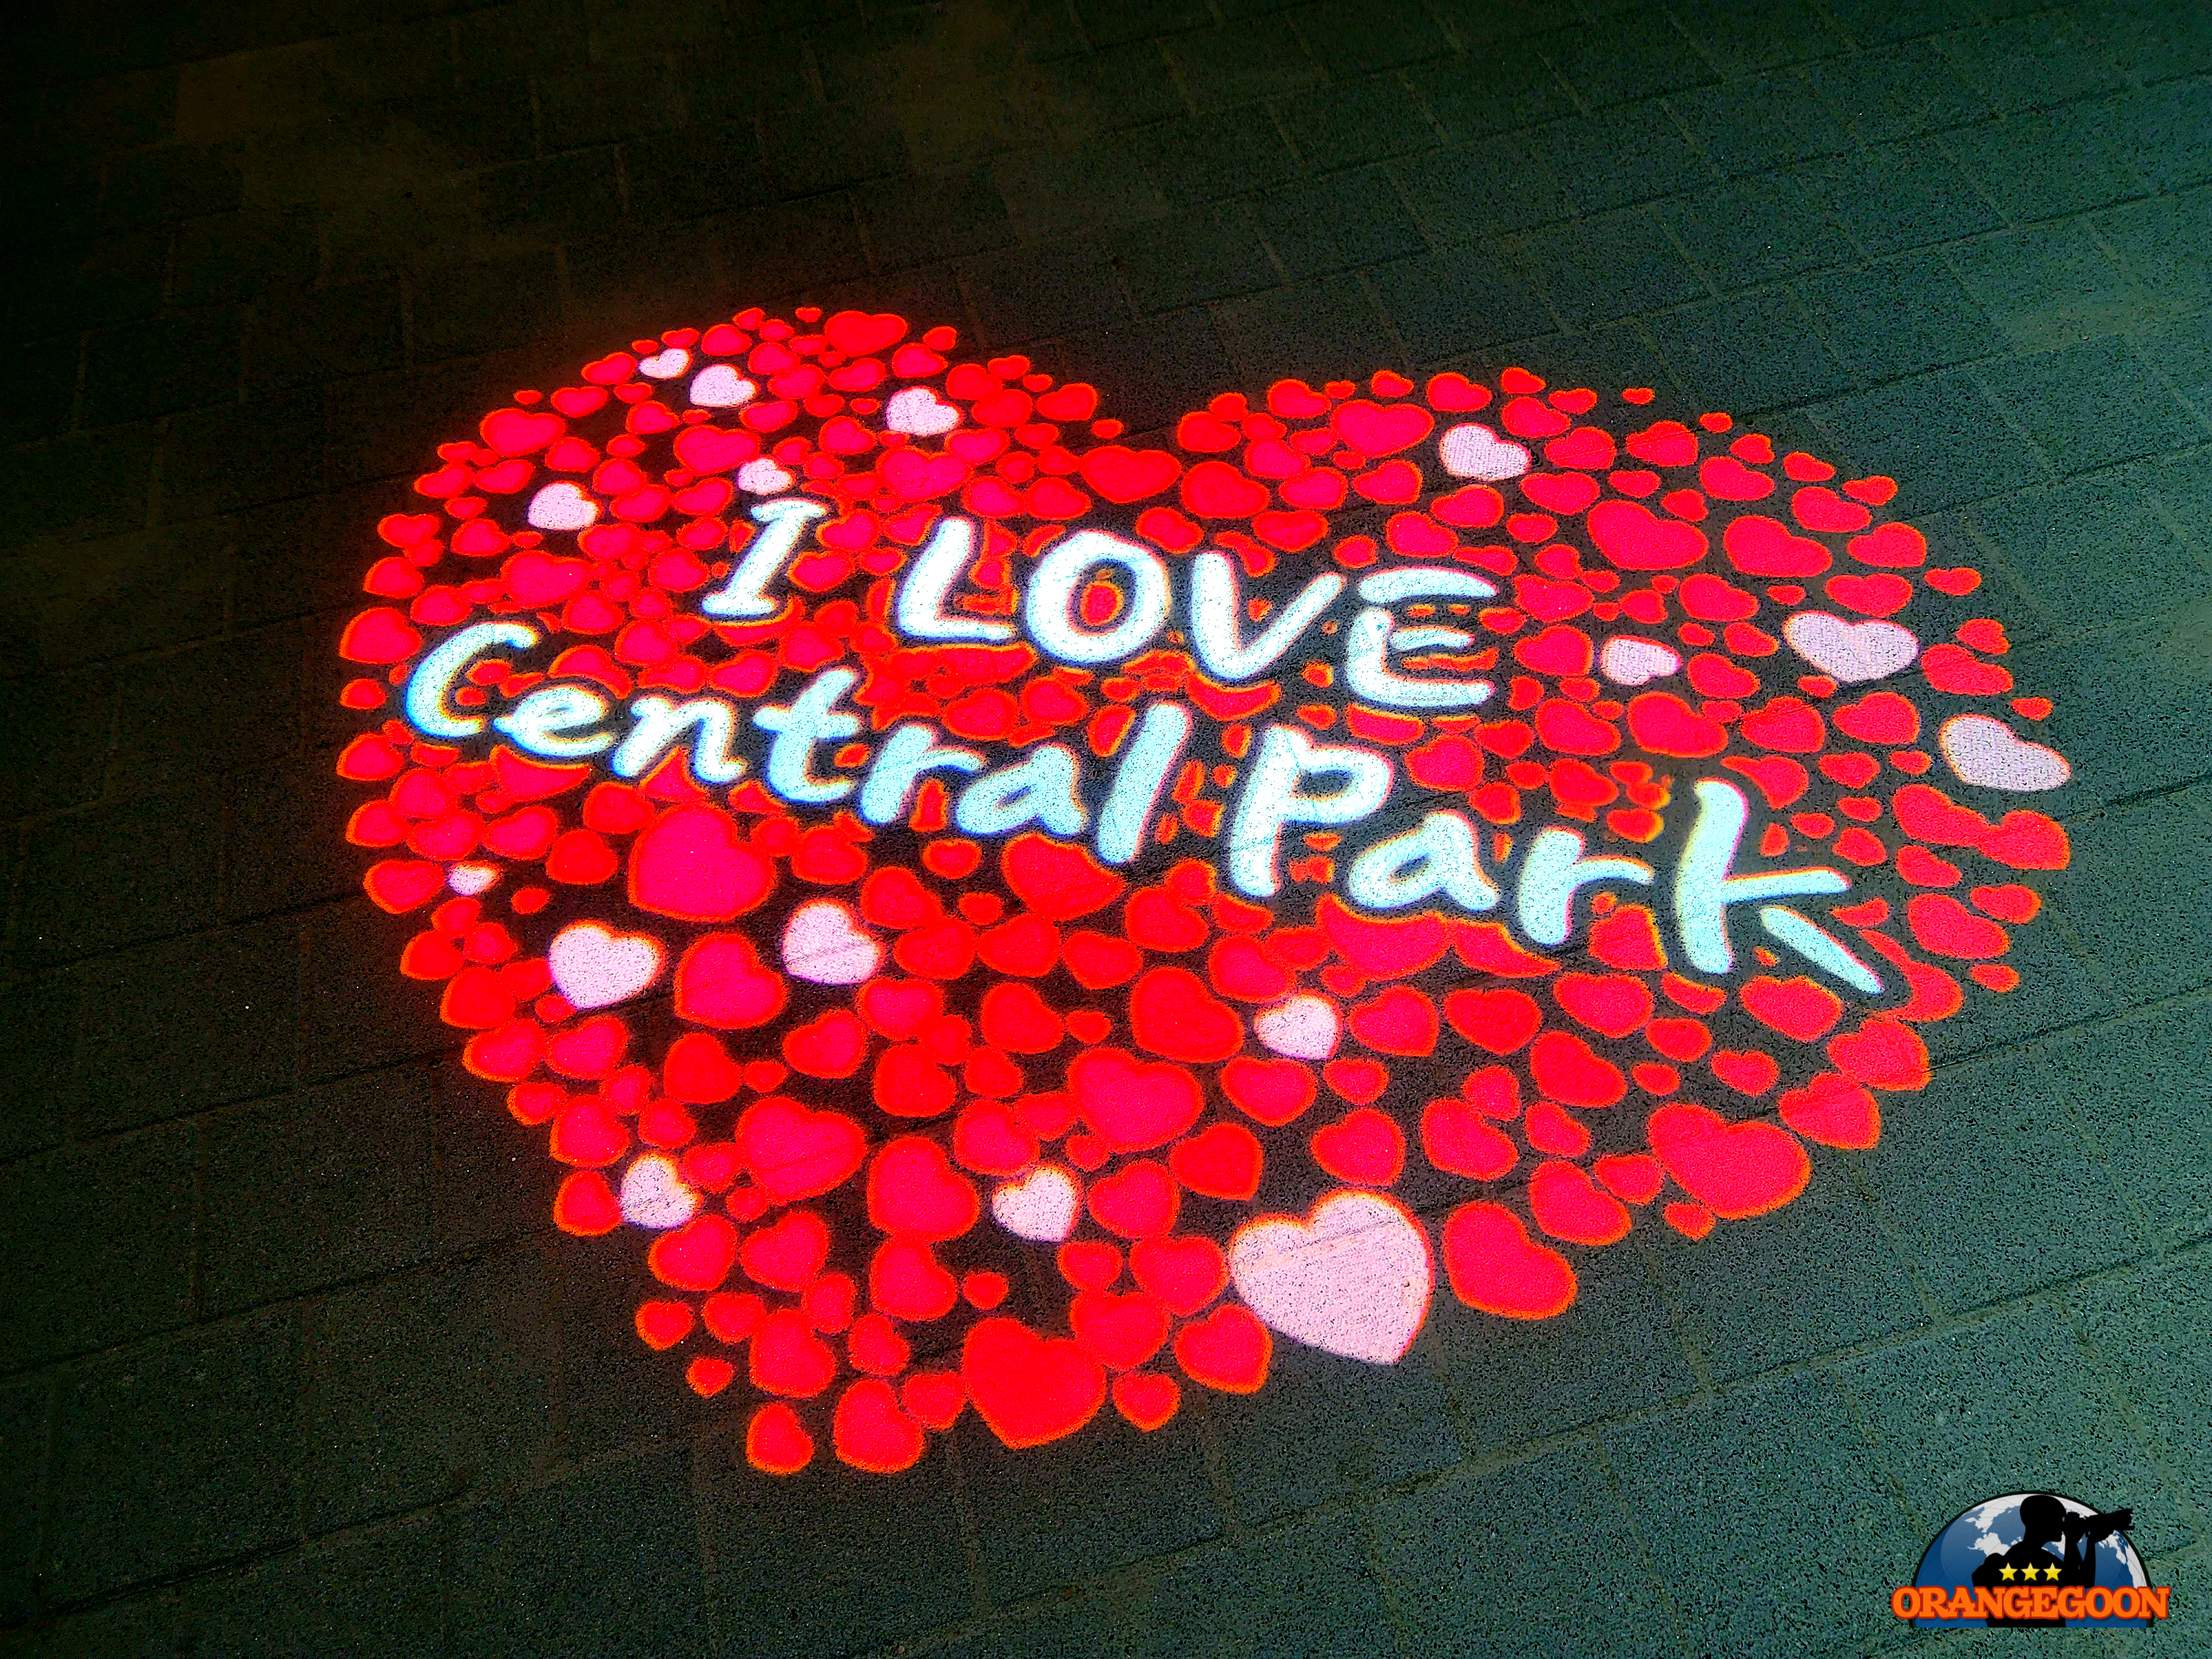 (인천 연수구 / 송도 센트럴파크 야경 #3) 이국적인 분위기의 야경을 부담없이 즐길 수 있는 곳. 인천이 제시하는 미래도시의 조건 Songdo Central Park